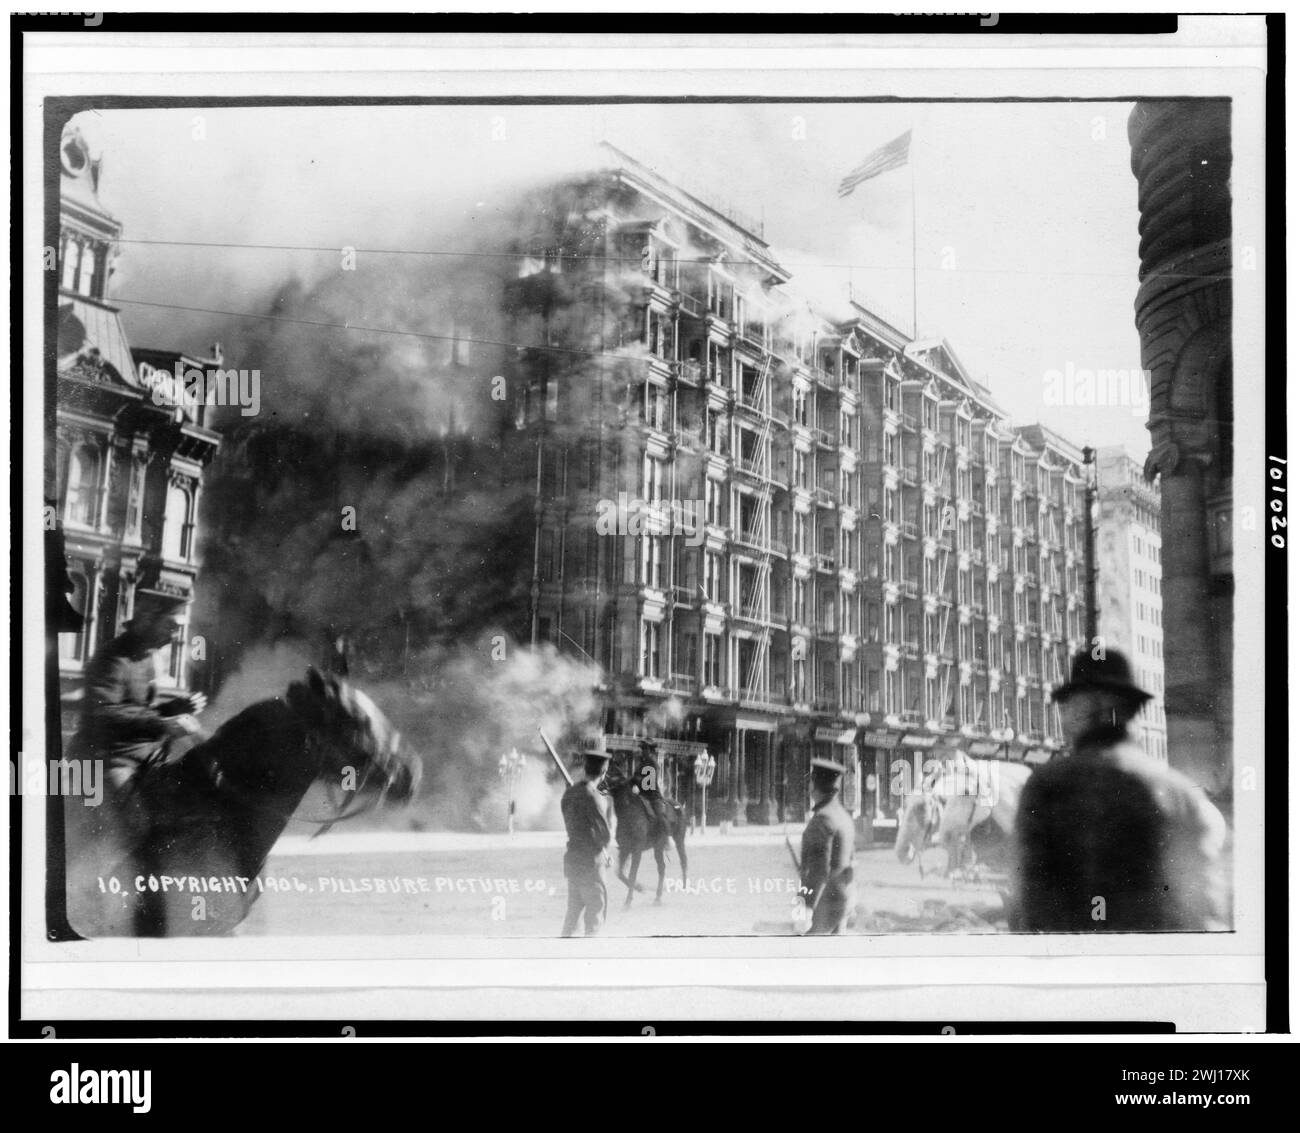 Terremoto di San Francisco del 1906. Palace Hotel in fiamme, San Francisco, California, durante il terremoto e l'incendio del 18 aprile 1906 Foto Stock